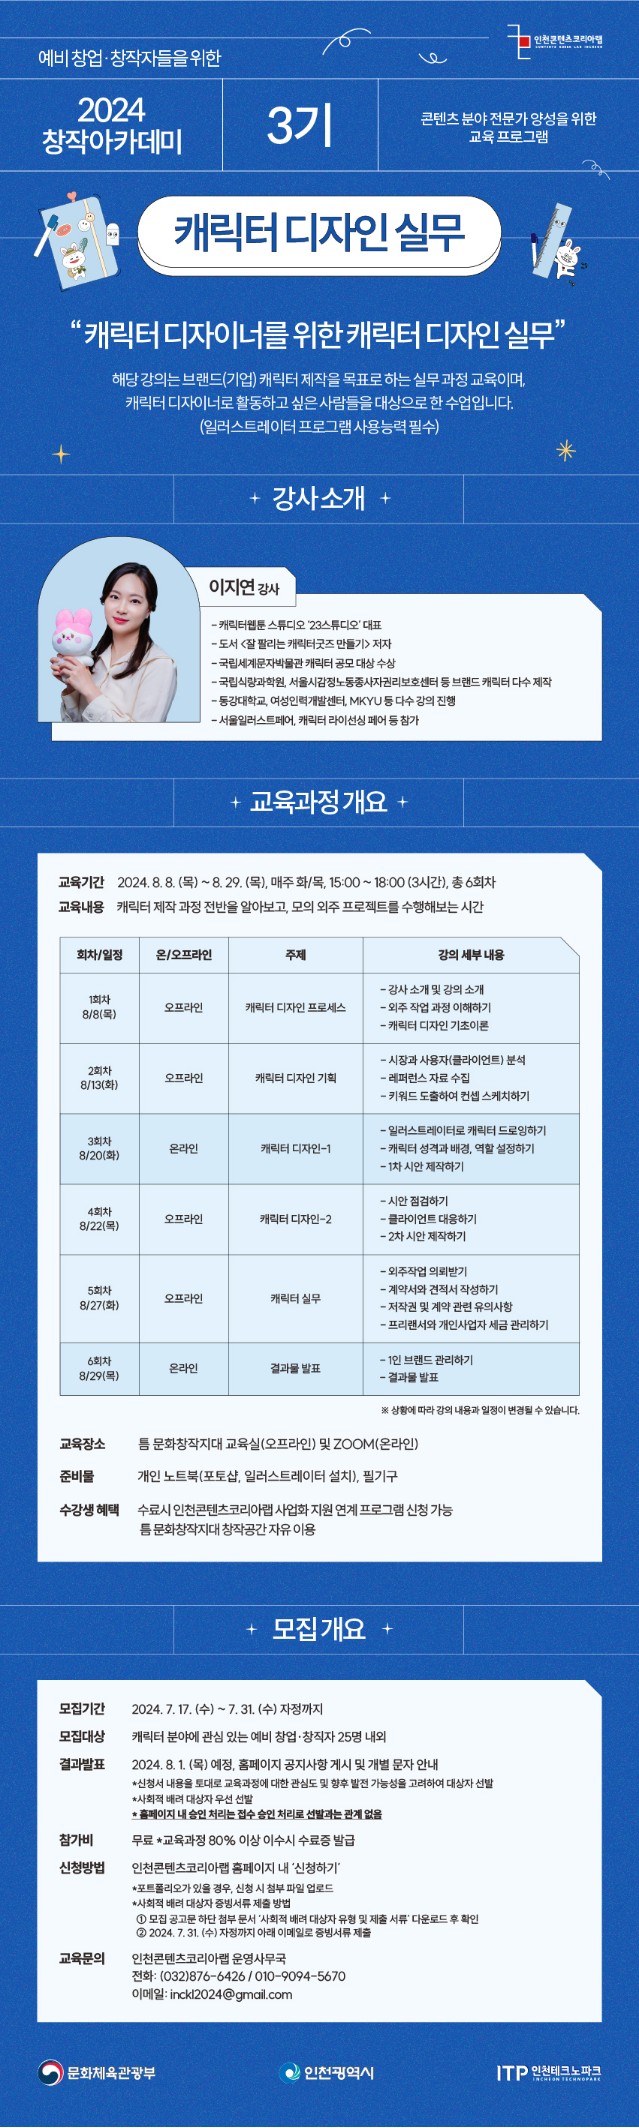 인천콘텐츠코리아랩 '2024 창작 아카데미 3기 - 캐릭터 디자인 실무 과정' 수강생 모집